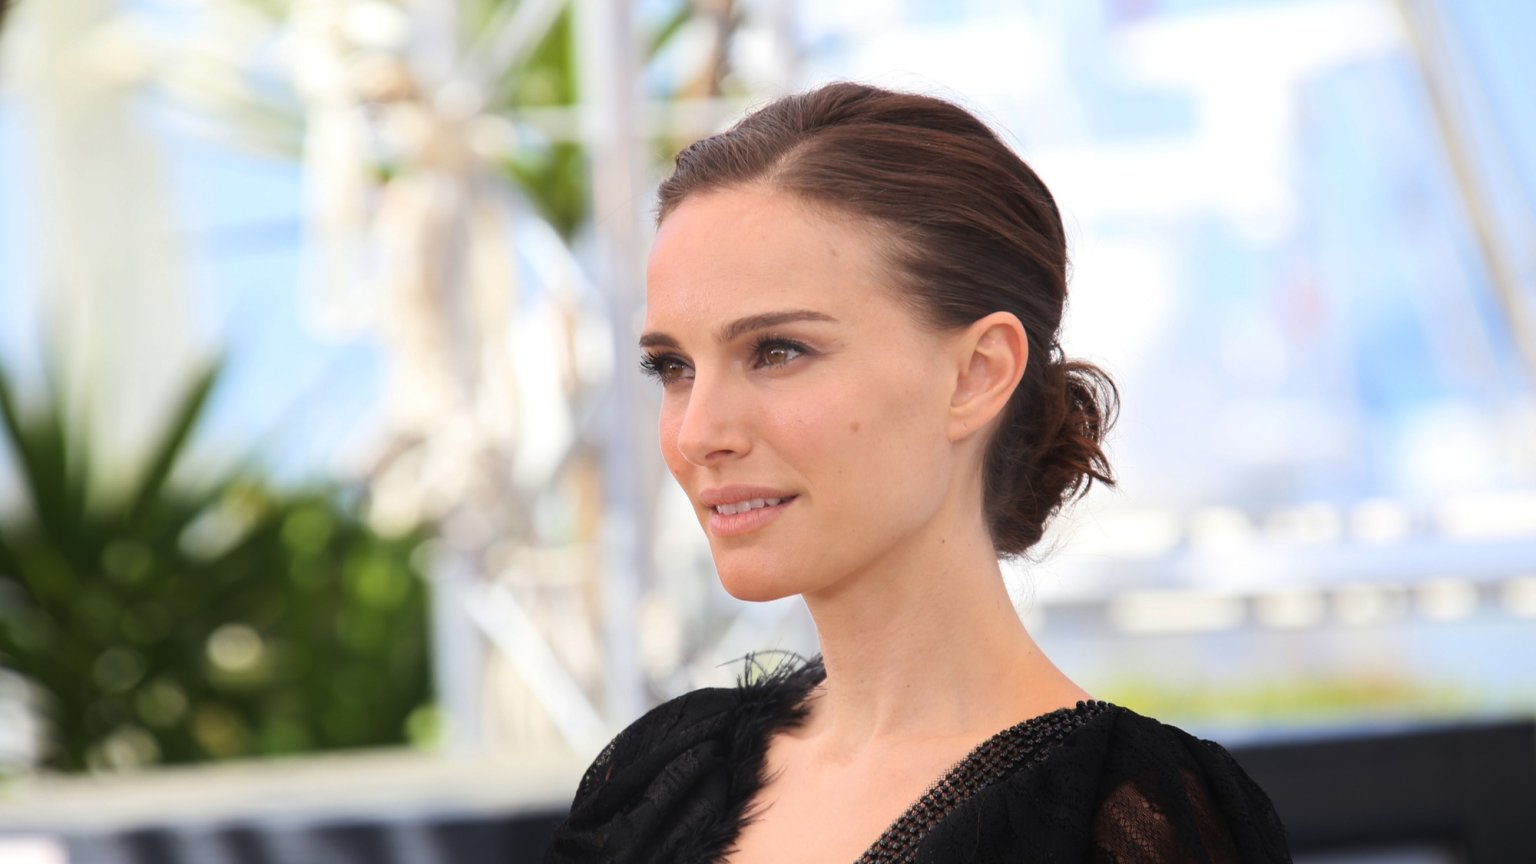 Vijf nieuwe acteurs voegen zich bij cast miniserie 'Lady in the Lake' met Natalie Portman